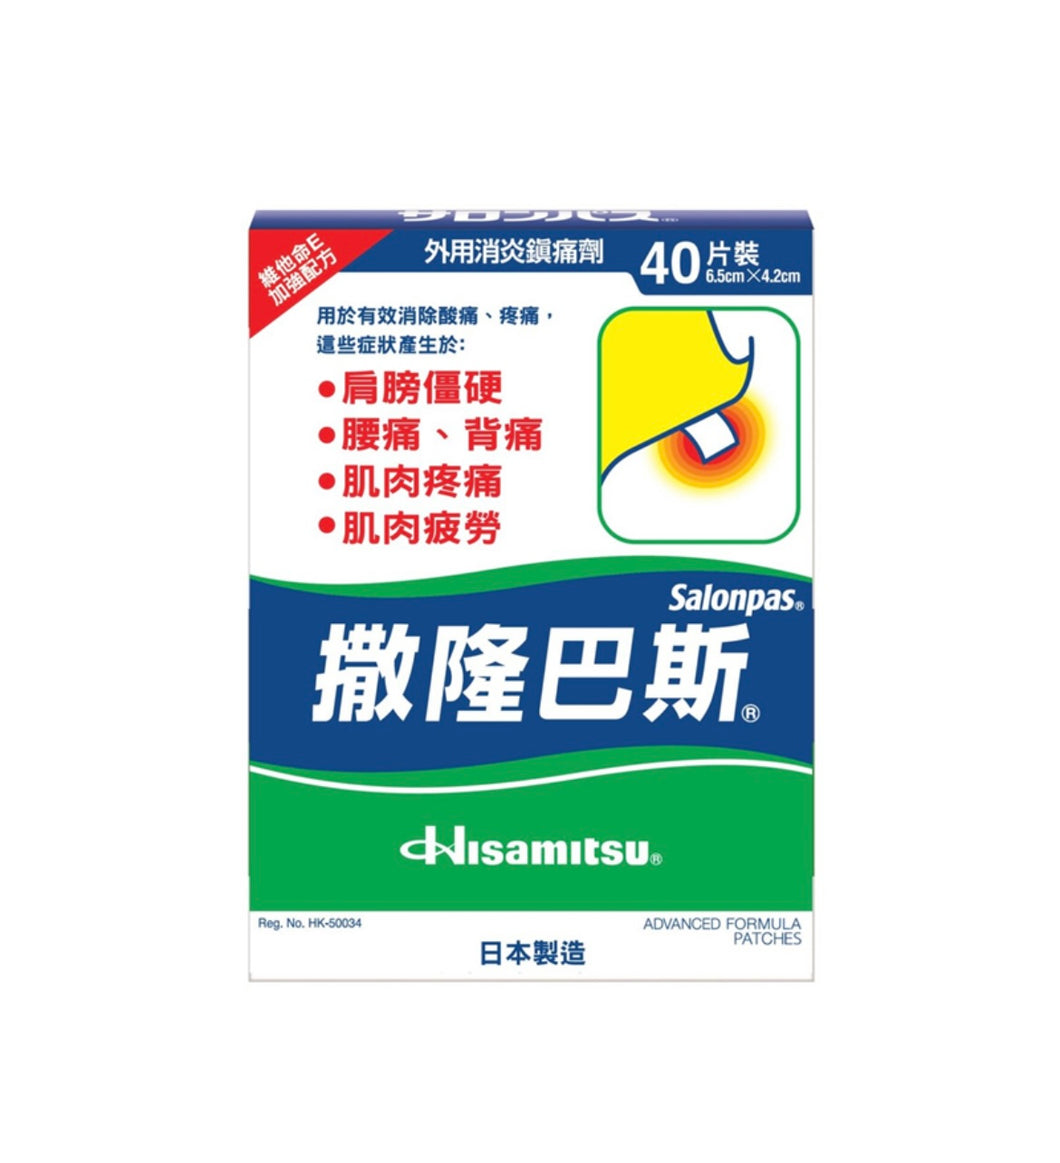 Hisamitsu Salonpas Aches and Pains Relief Patches 40pcs 6.5cm x 4.2cm <br> 久光製藥 撒隆巴斯 鎮痛貼40片裝 6.5cm x 4.2cm